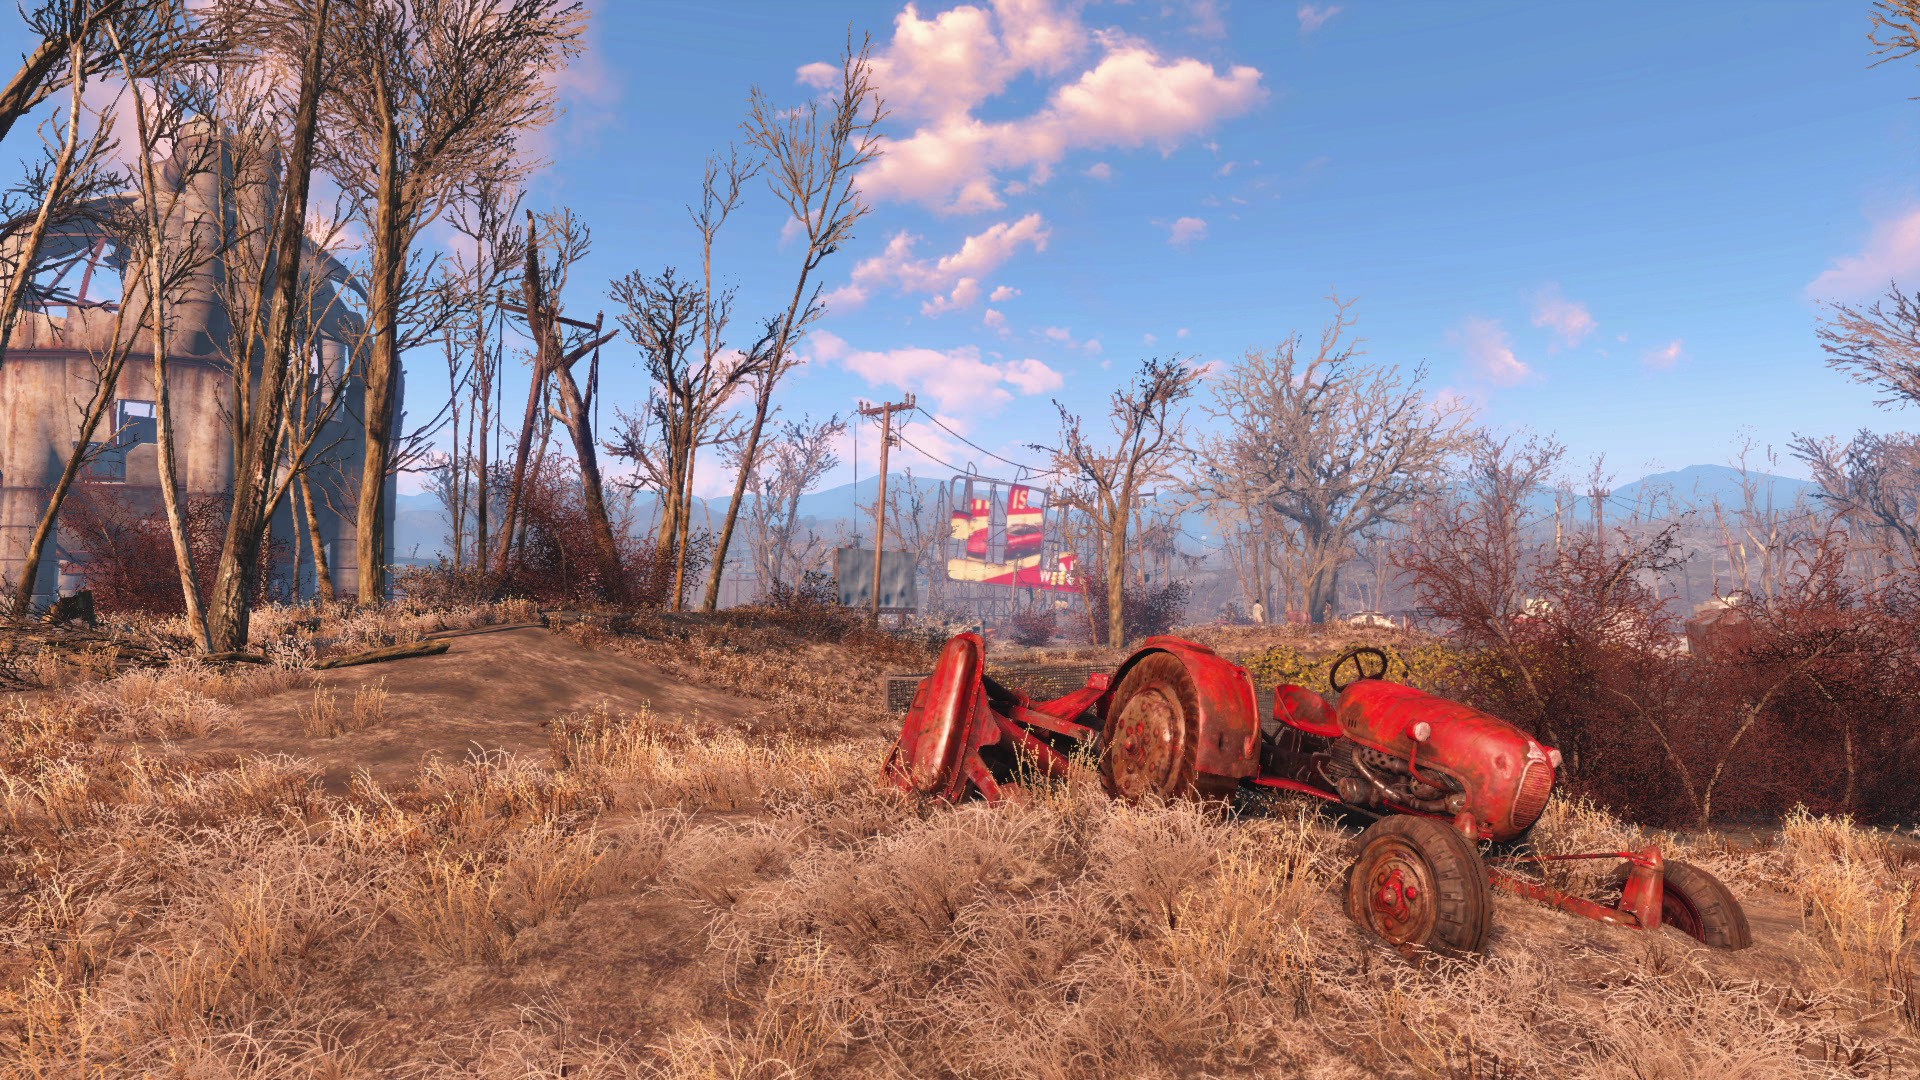 Fallout 4 все dlc последняя версия